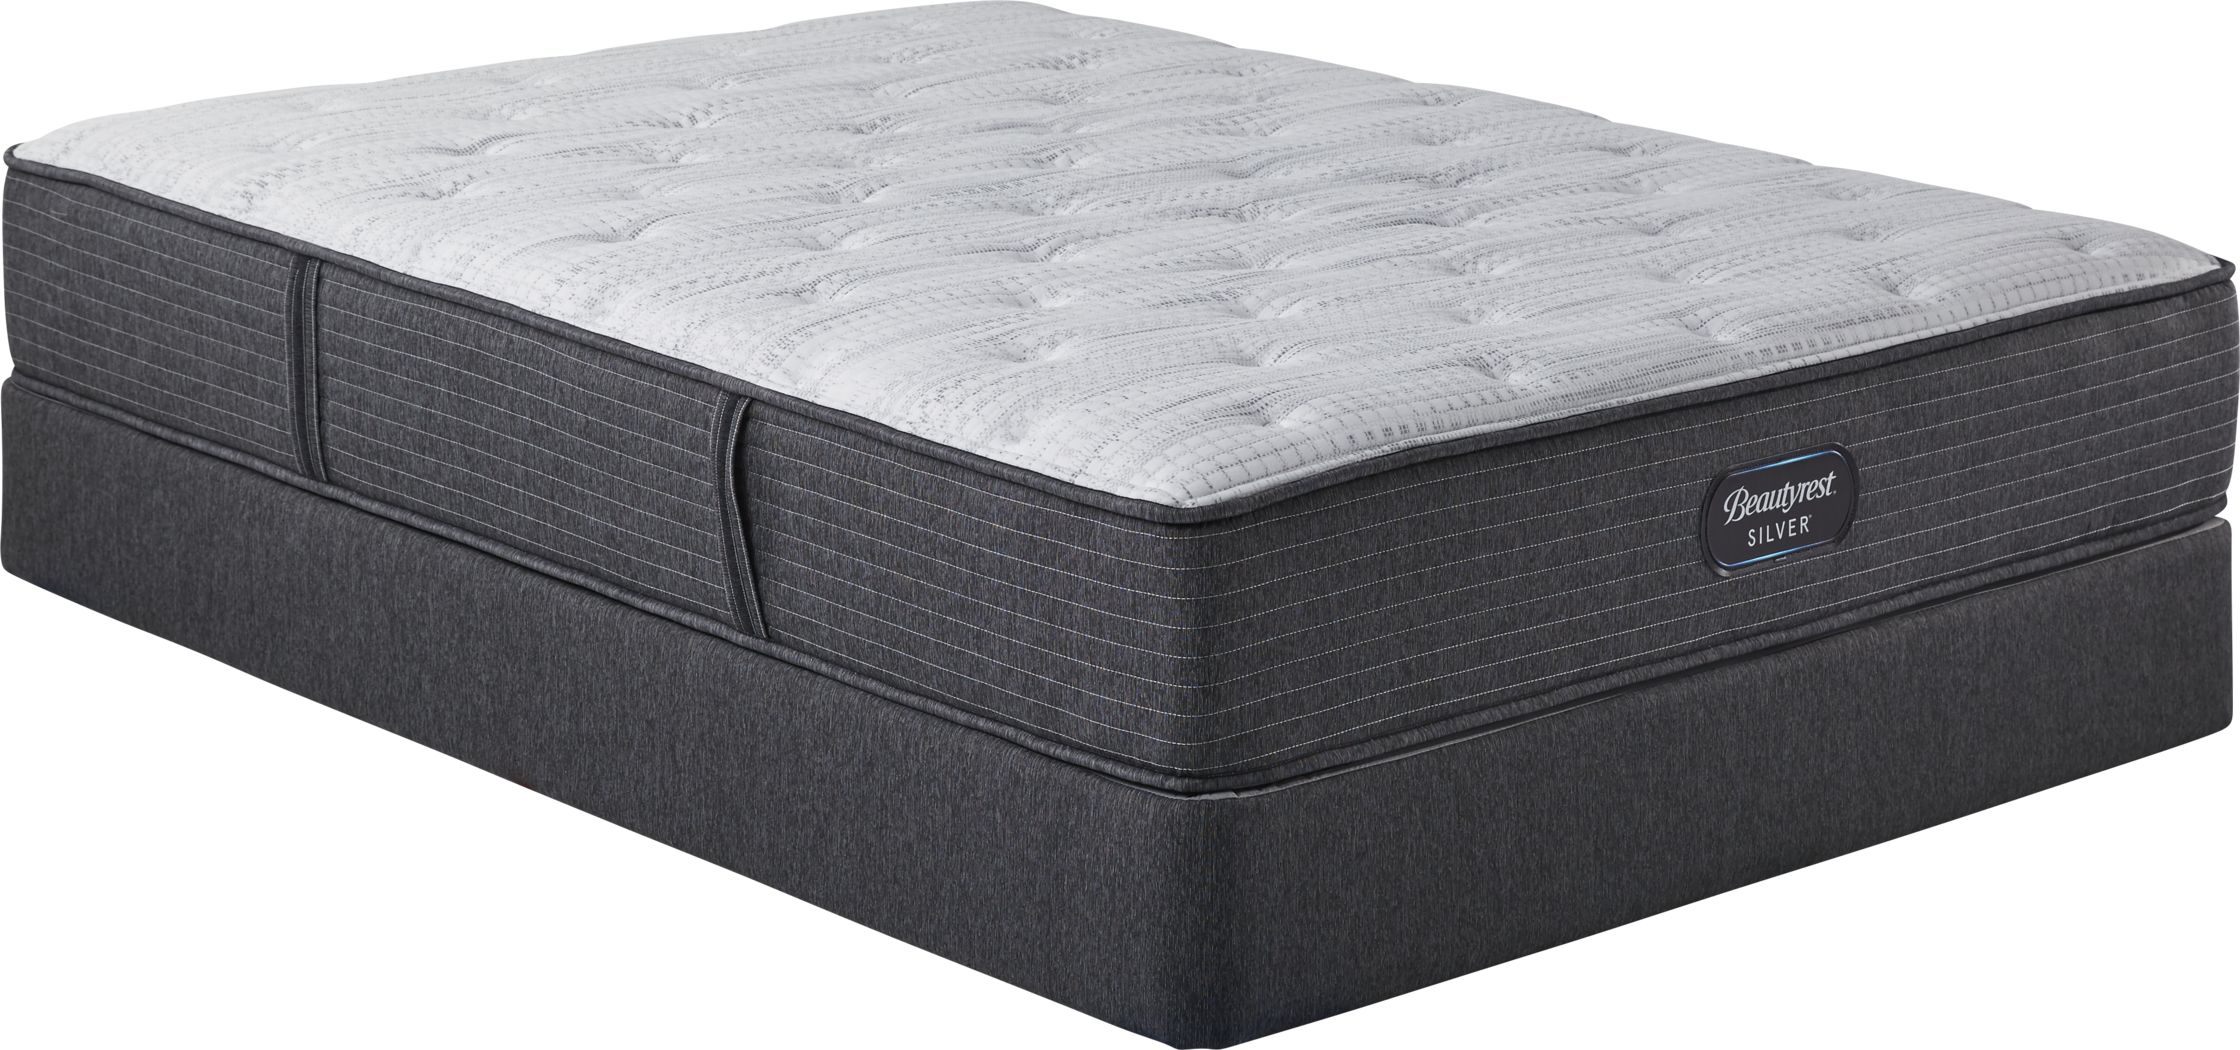 beautyrest mattress rv queen